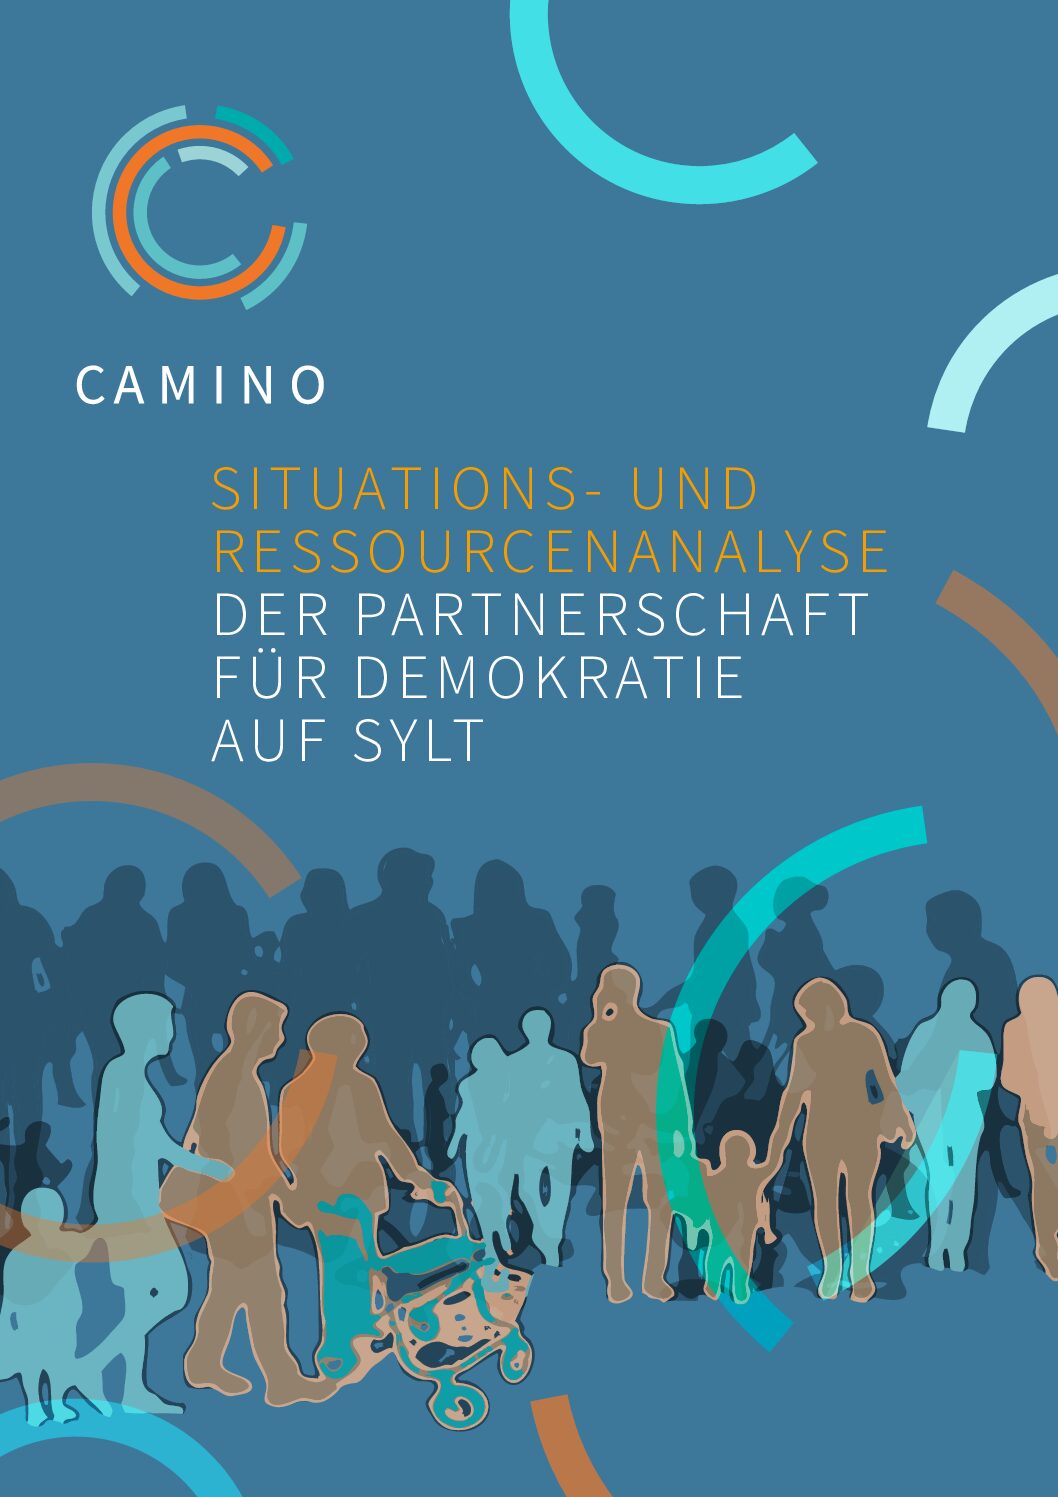 Veröffentlichung: Die Partnerschaft für Demokratie auf Sylt stärkt Zusammenarbeit durch innovative Situations- und Ressourcenanalyse